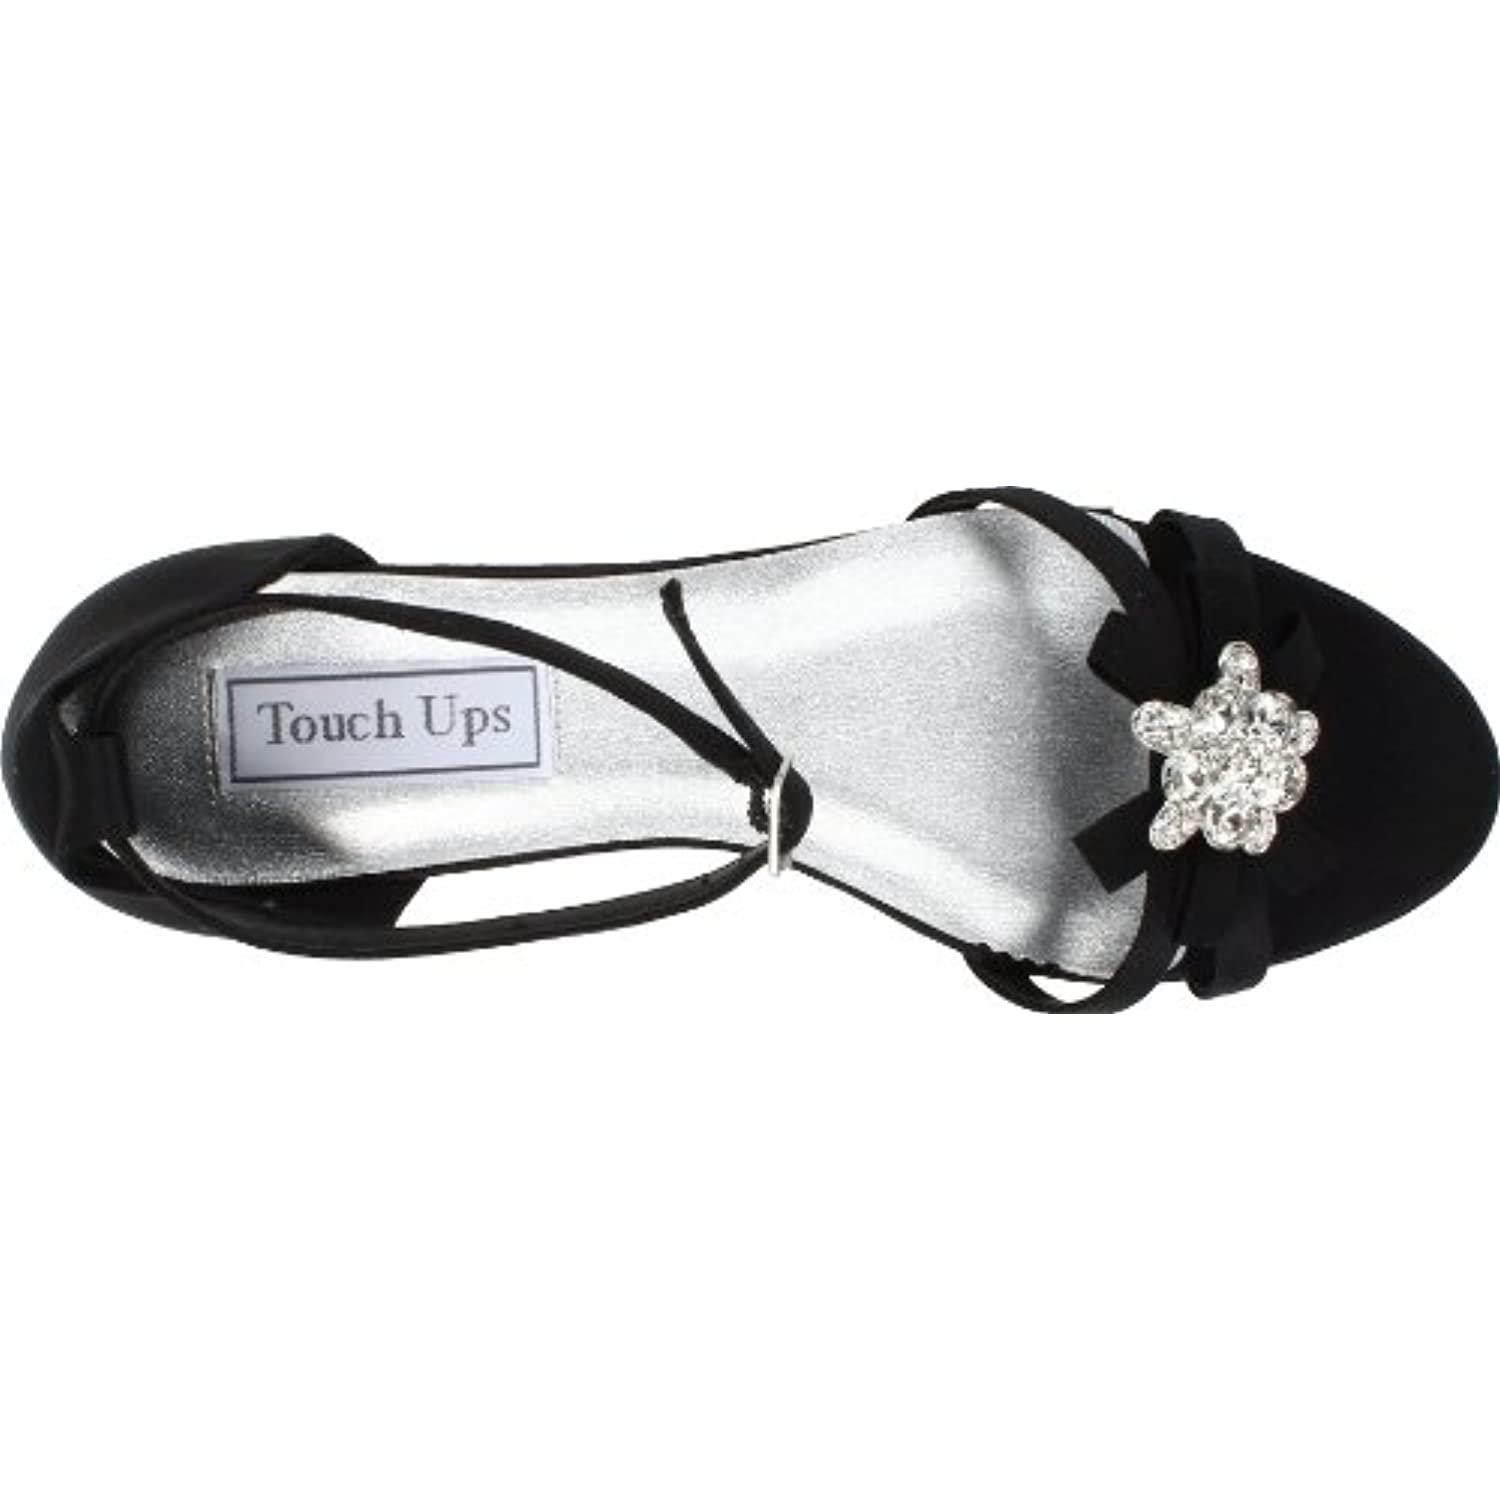 Touch Ups Women's Tillie Wedge Sandal,White Satin,6 M US